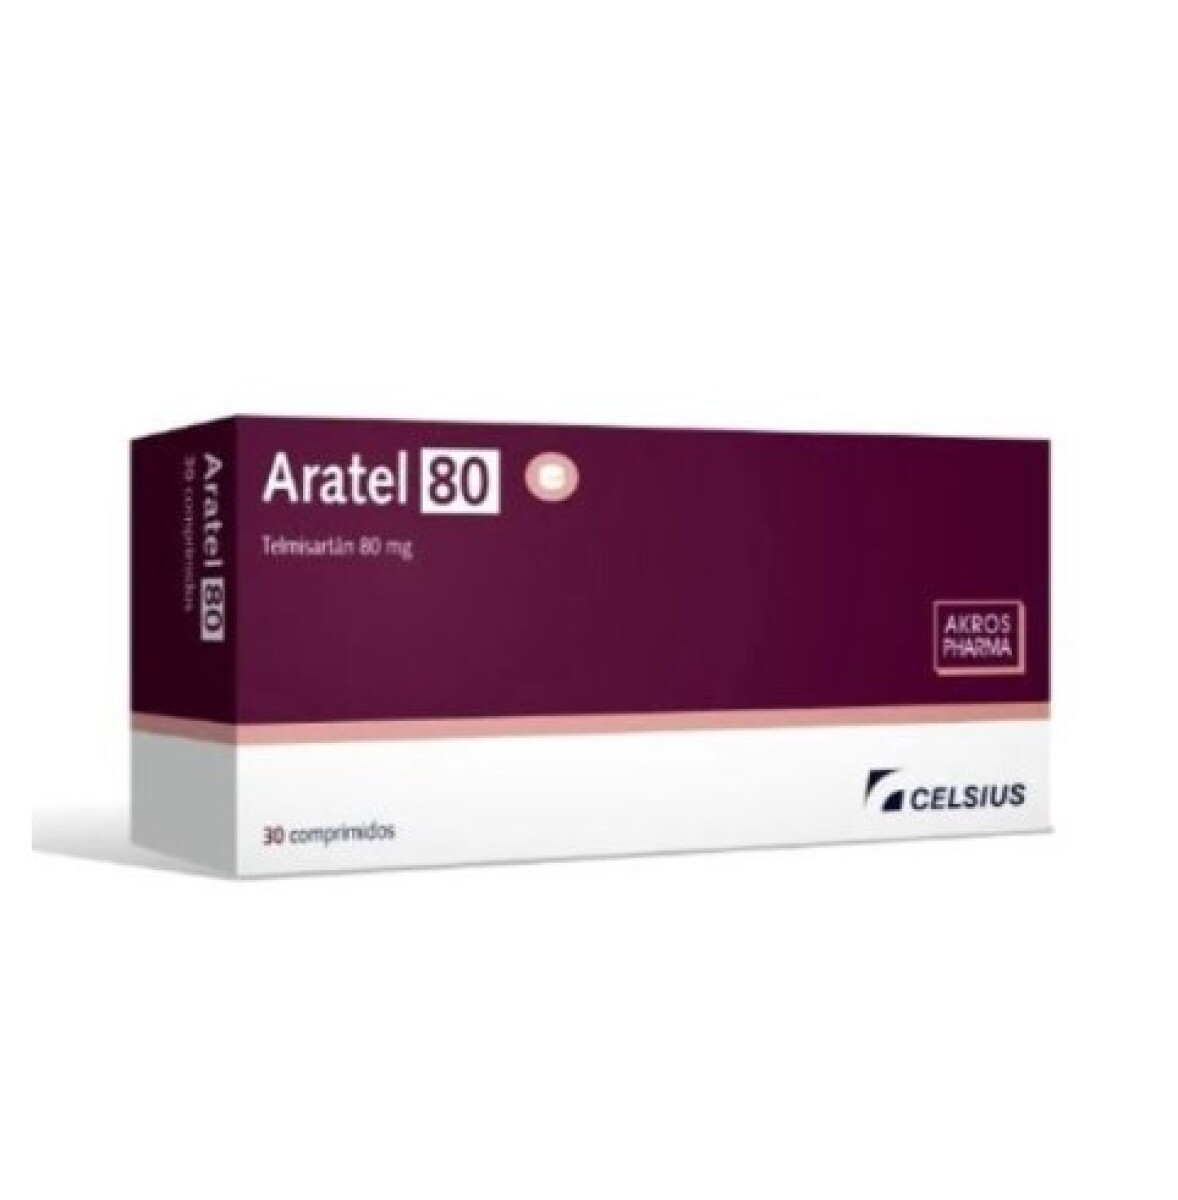 Aratel 80 x 30 COM 